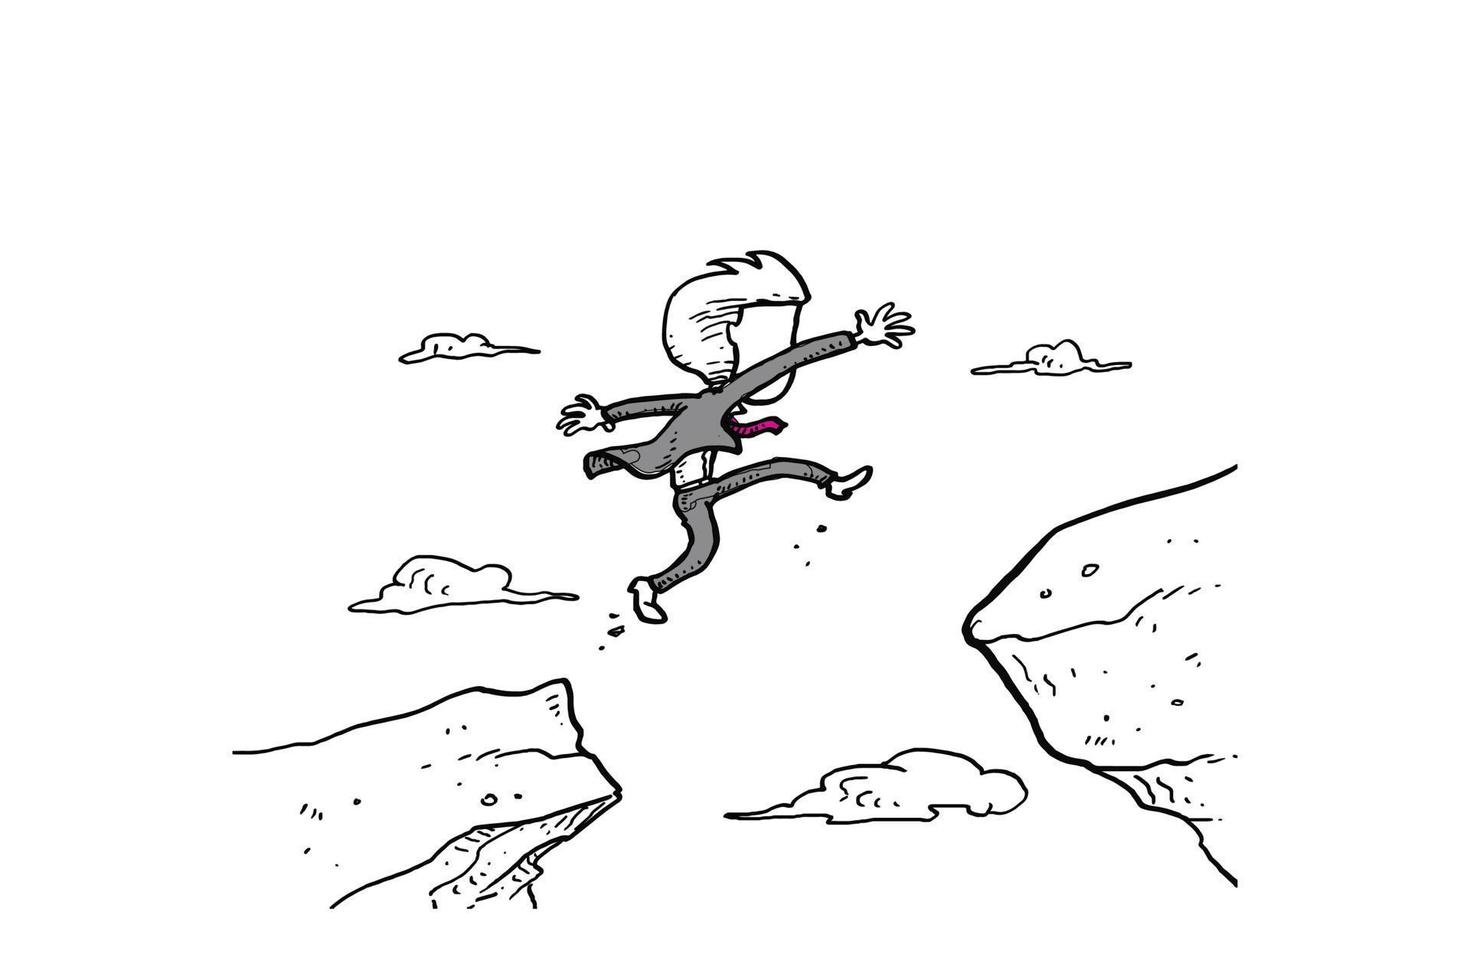 homme d'affaires saute à travers l'écart entre la colline. l'homme saute par-dessus la falaise. conception d'illustration vectorielle de personnage vecteur